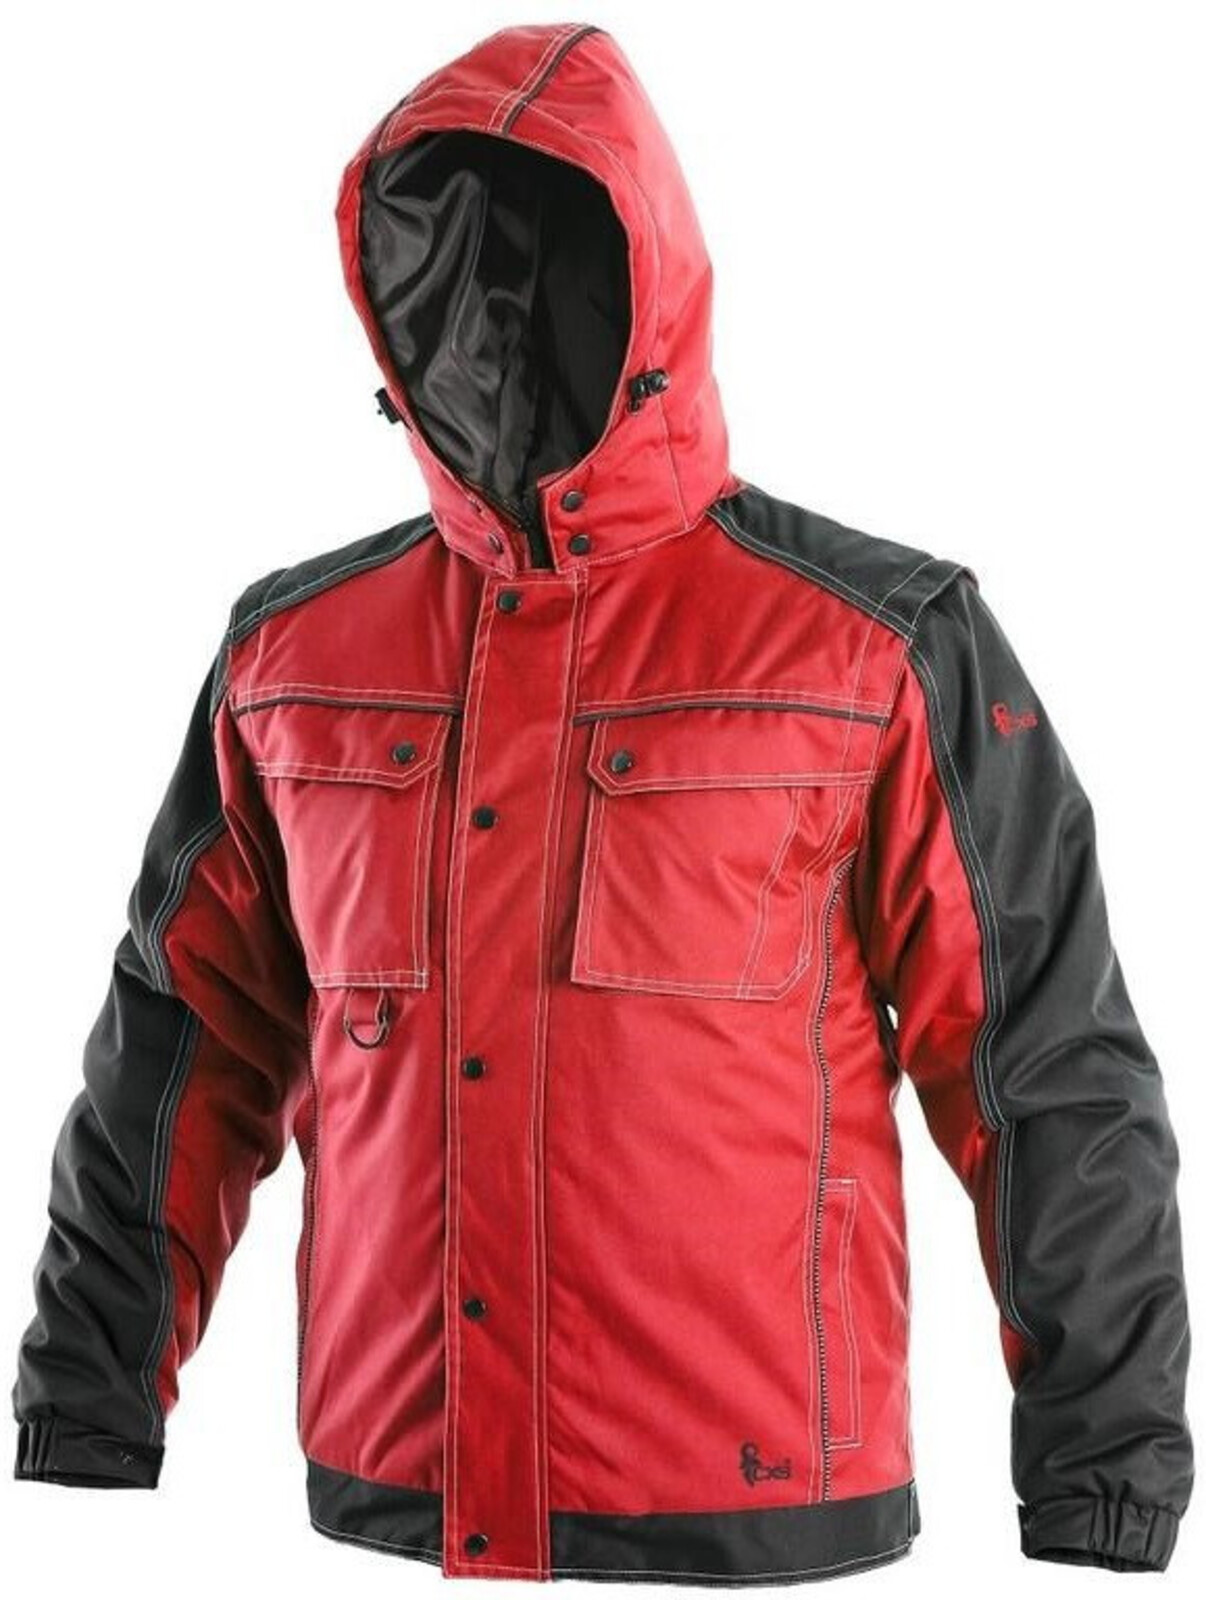 Pánska zimná bunda CXS Irvine 2v1 - veľkosť: 3XL, farba: červená/čierna